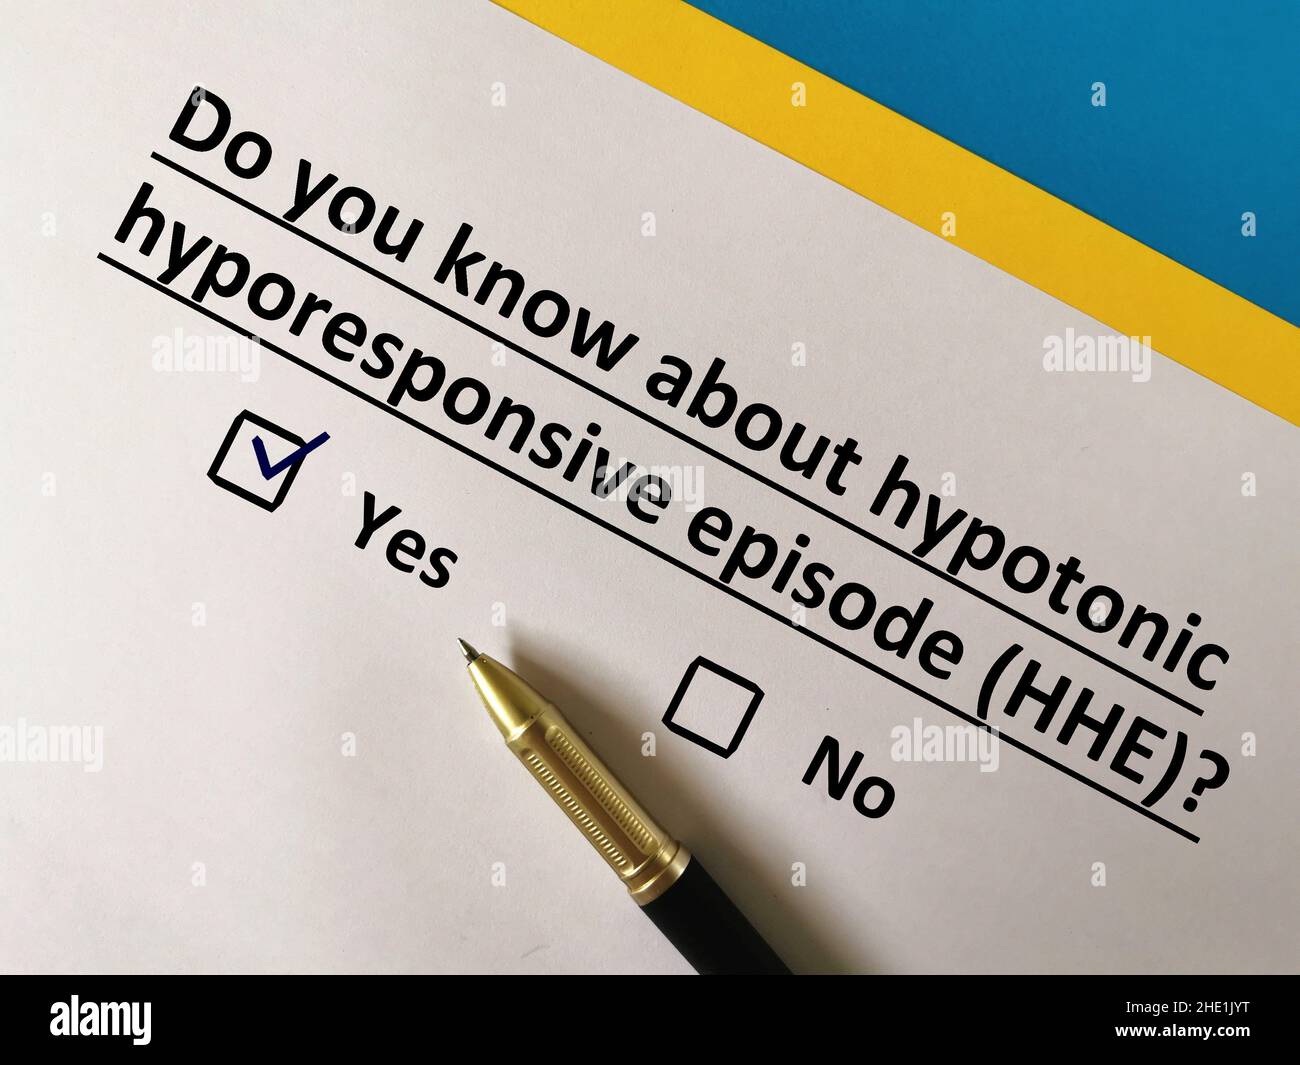 Une personne répond à une question sur les vaccins.Il connaît l'épisode hypotonique hyporesponsif (HHE) Banque D'Images